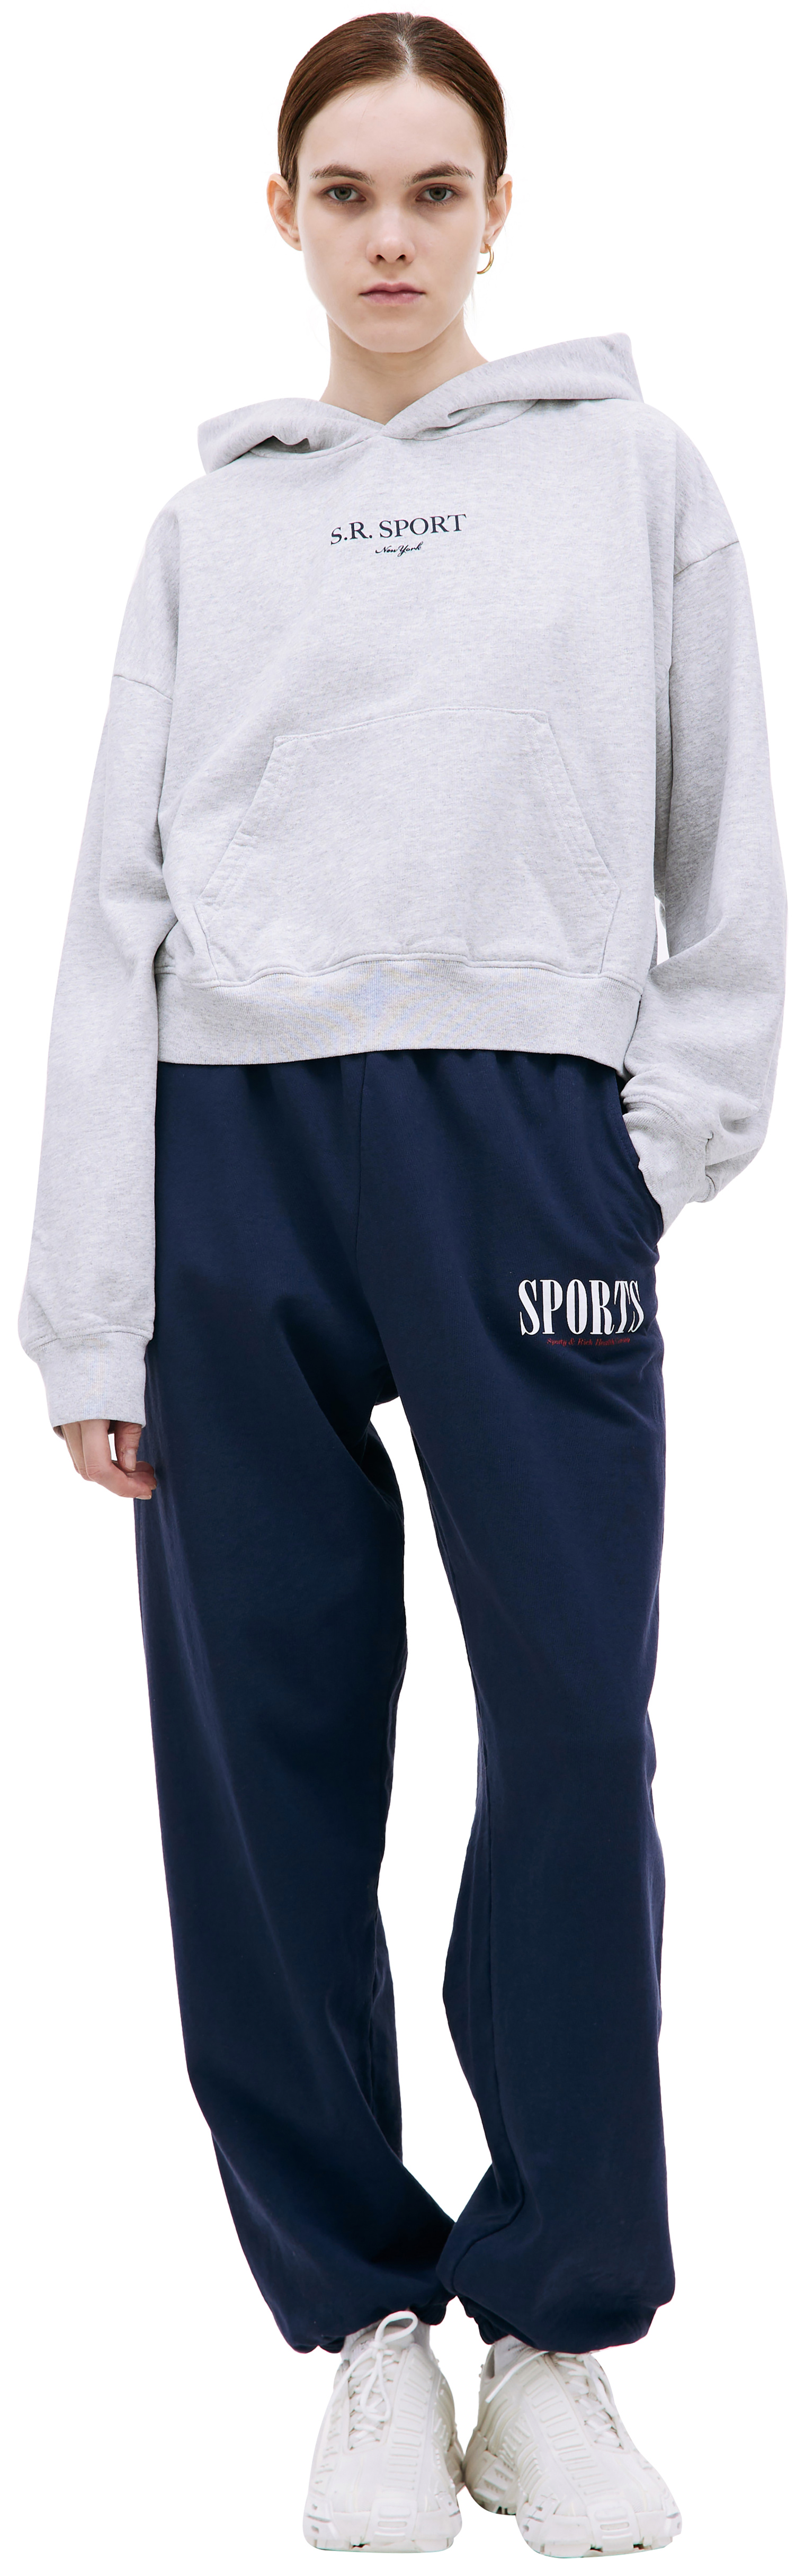 SPORTY & RICH \'SR Sport\' printed hoodie